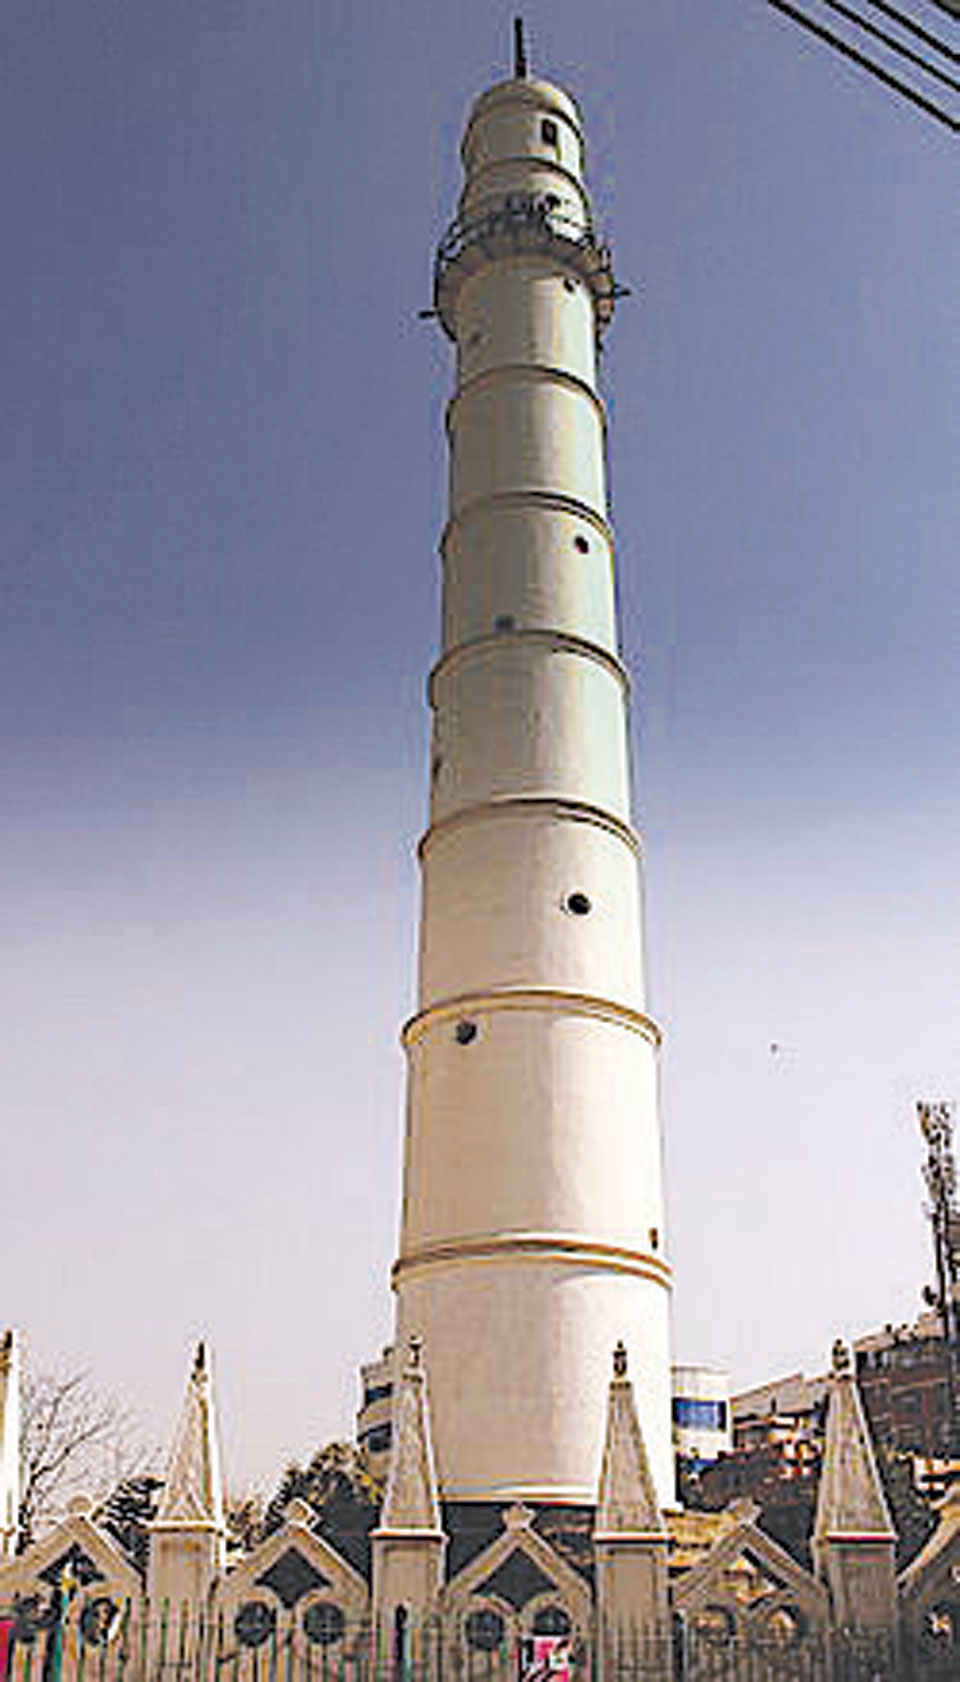 Dharahara reconstruction still uncertain